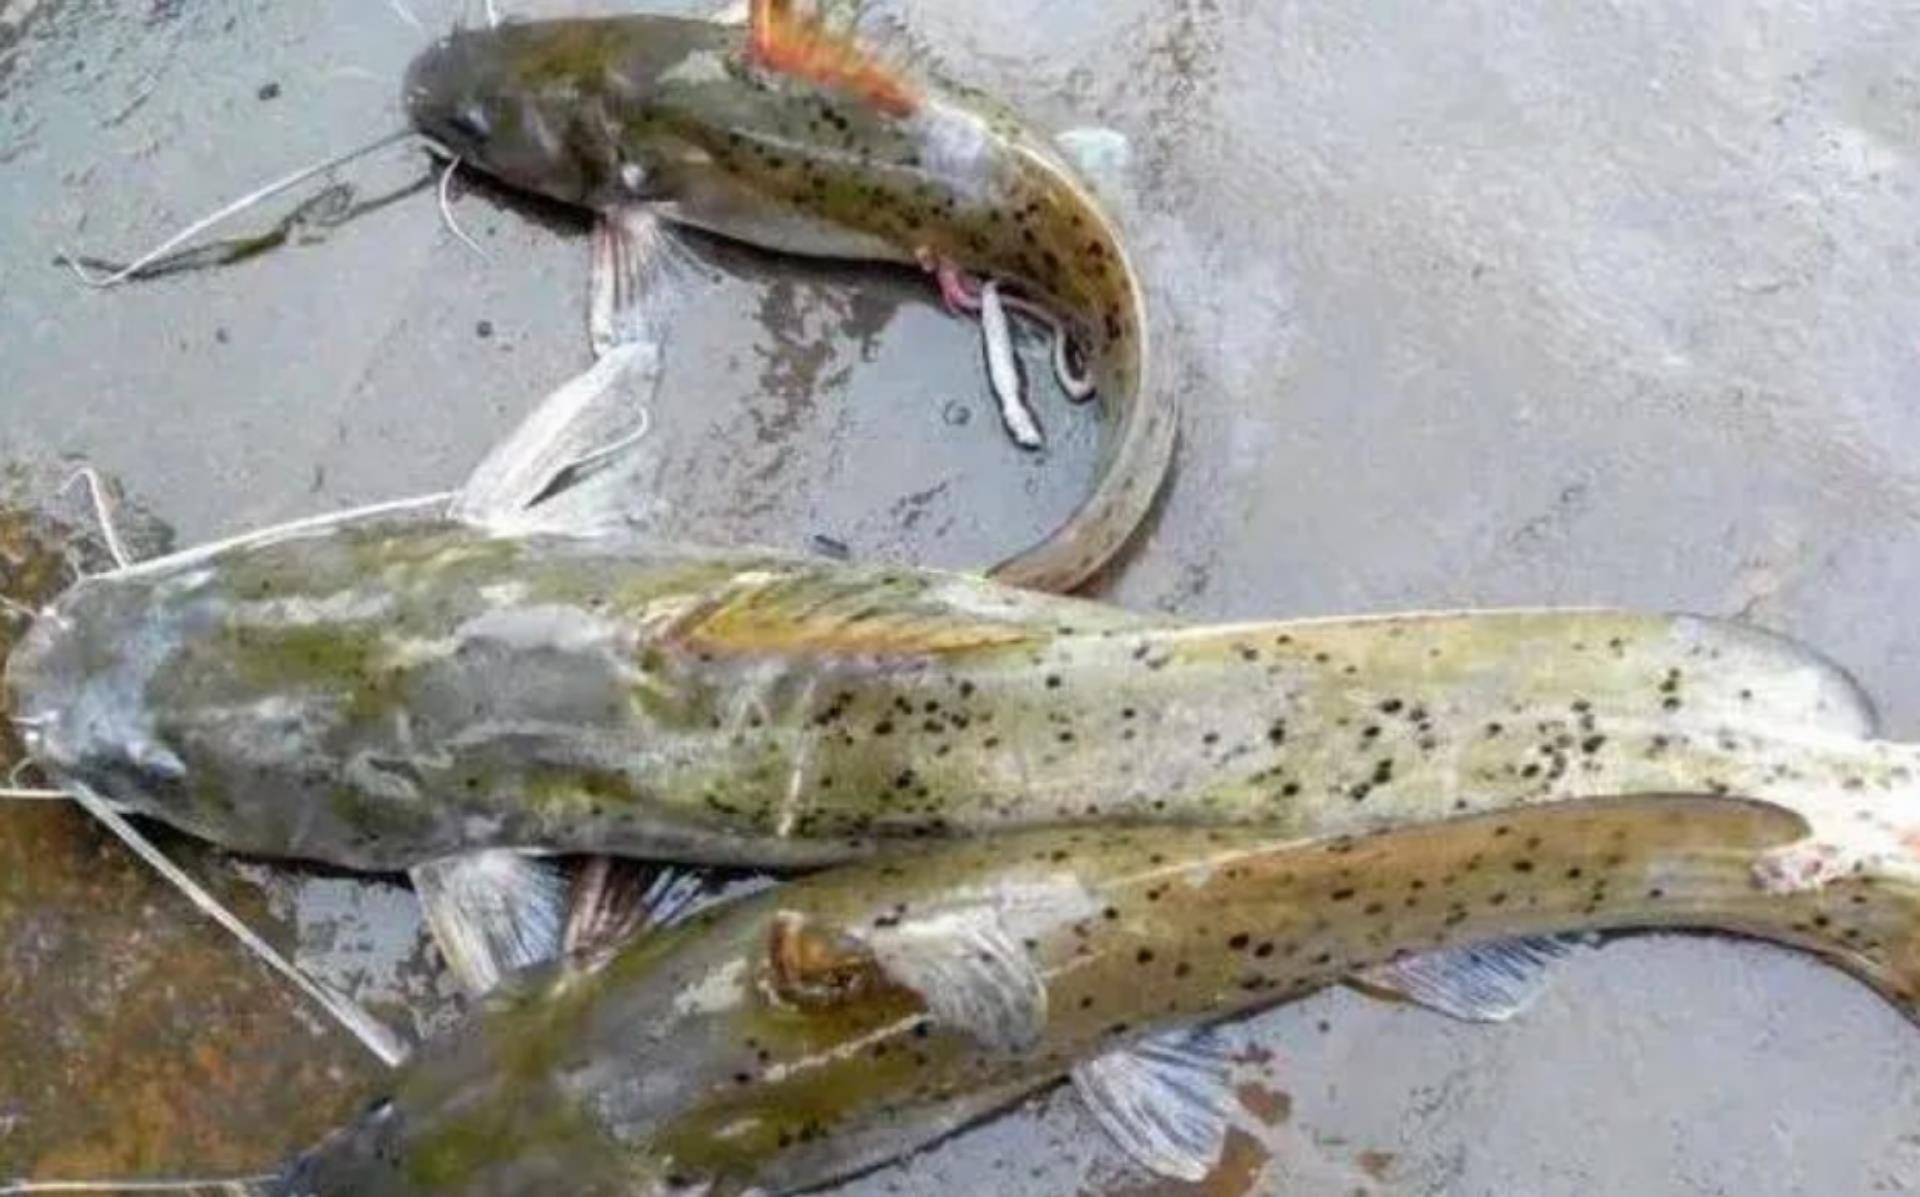 芝麻剑鱼是属于中大型鱼类,常见的野生芝麻剑体长约在30～40厘米,重3